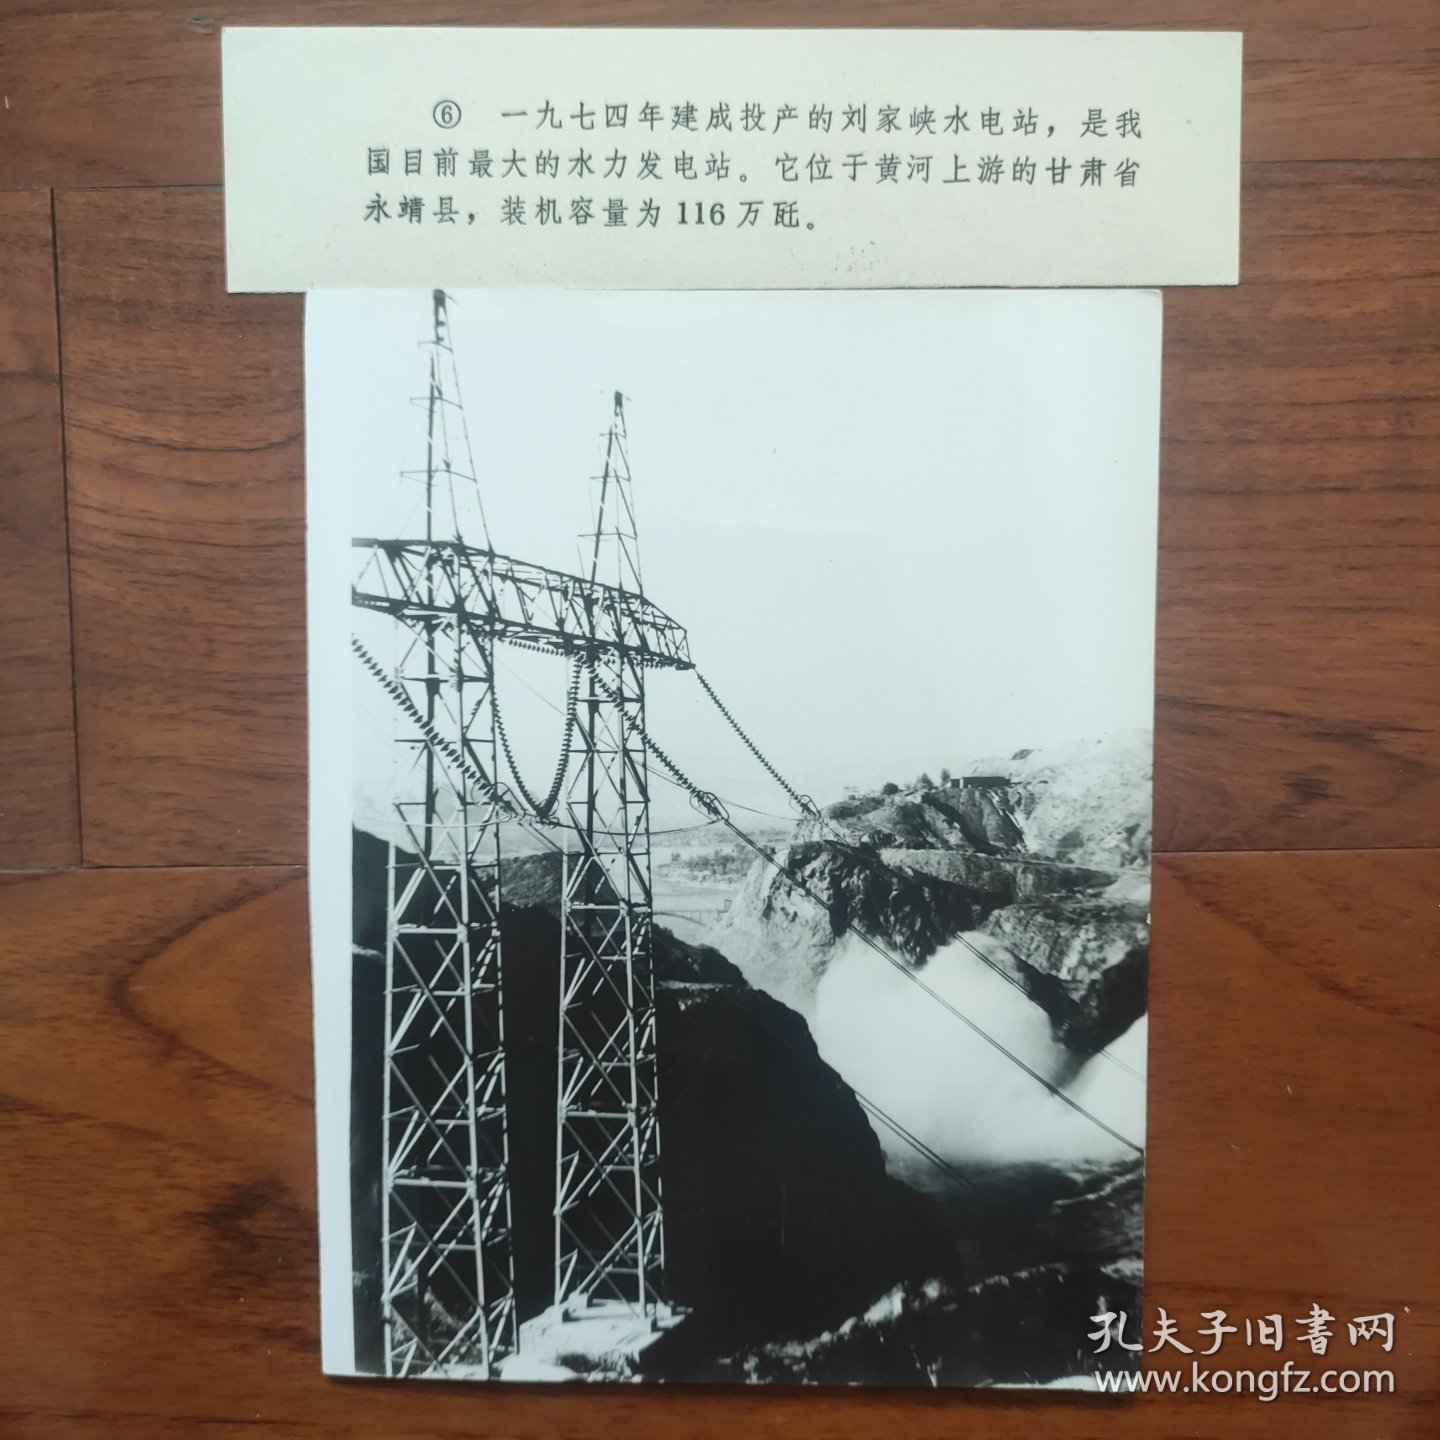 1974年，中国最大的水电站---甘肃永靖县刘家峡水电站建成投产